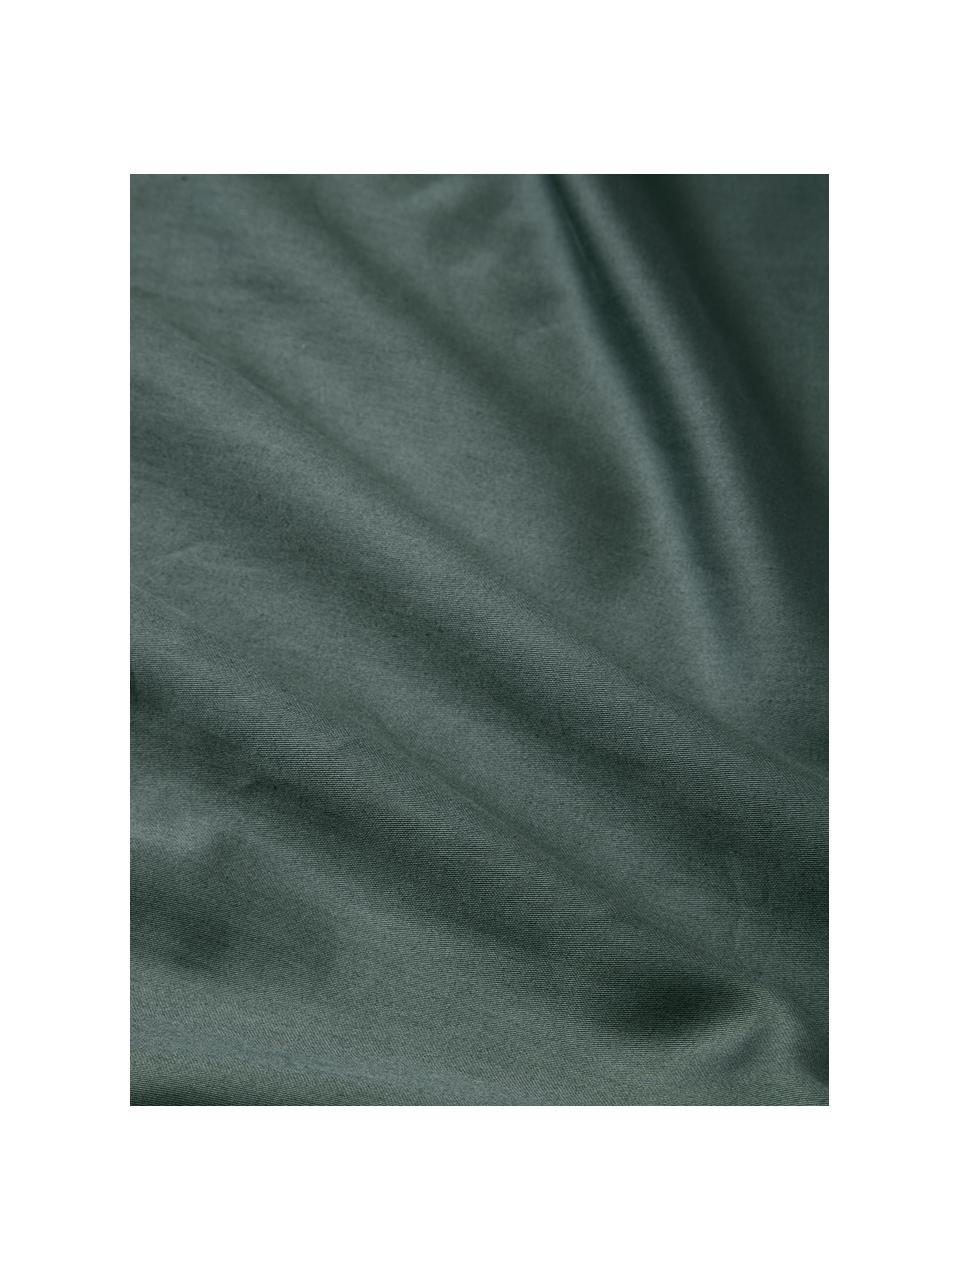 Poszwa na kołdrę z satyny bawełnianej Flori, Ciemny zielony, wielobarwny, S 200 x D 200 cm